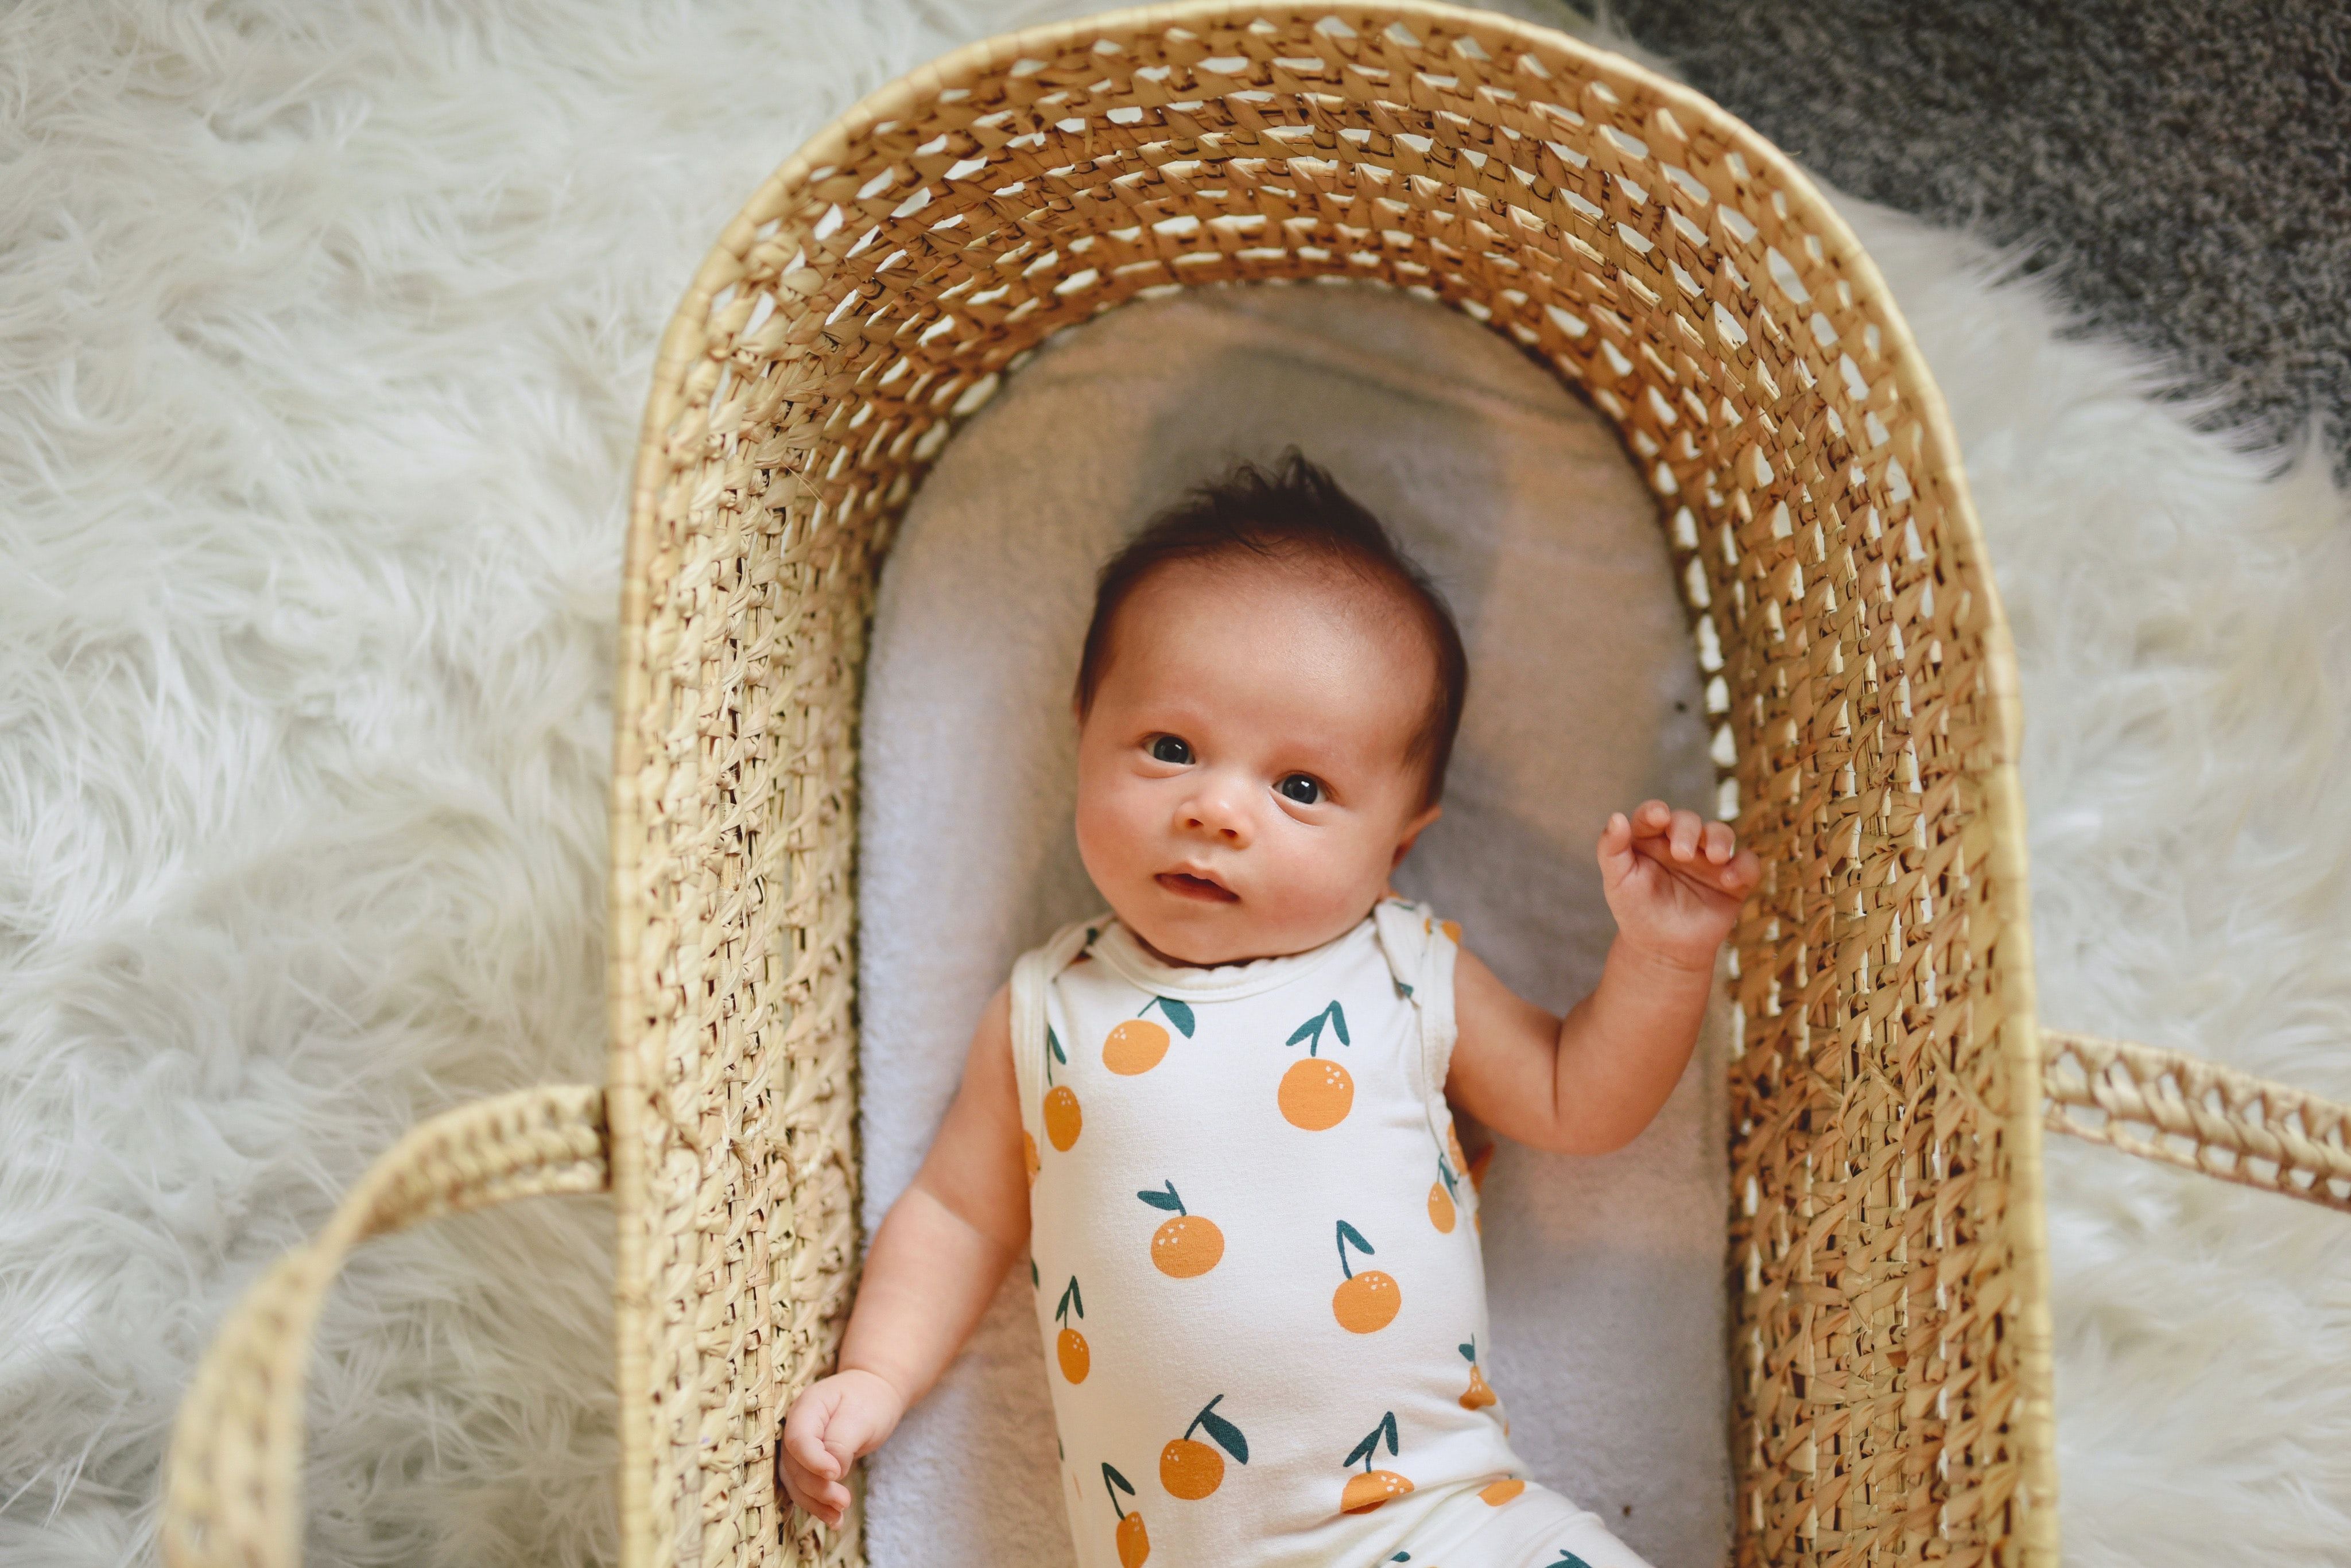 Baby in wicker basket 